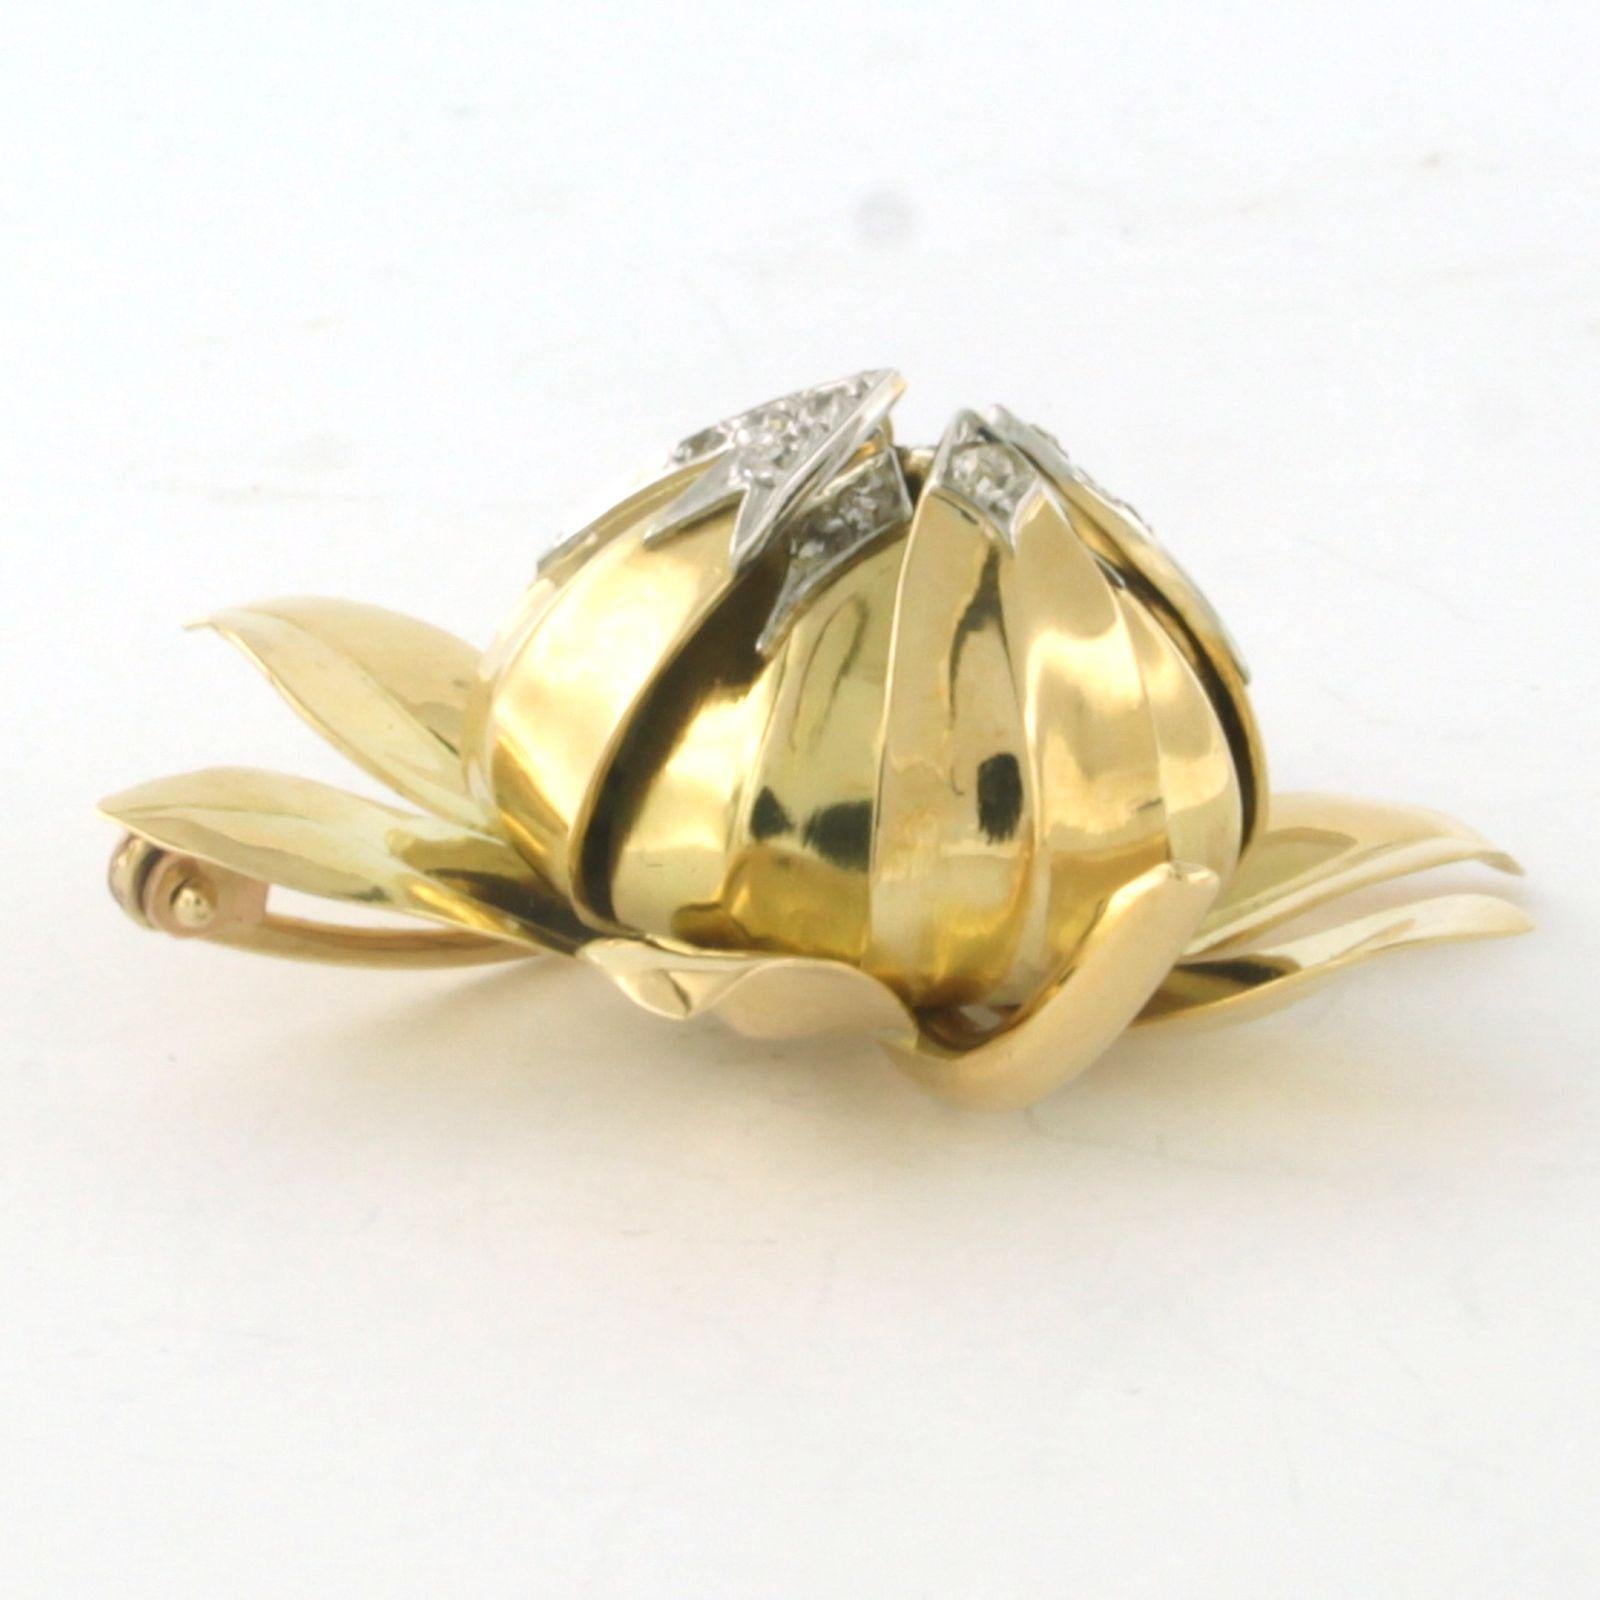 Brosche aus 18 Karat Bicolor-Gold in Form einer Blume, besetzt mit Diamanten im Einzelschliff. 0,20ct - F/G - VS/SI

Ausführliche Beschreibung

die Größe der Brosche ist 3,8 cm mal 3,3 cm breit

Gewicht 11,5 Gramm

gesetzt mit

- 20 x 1,3 mm große